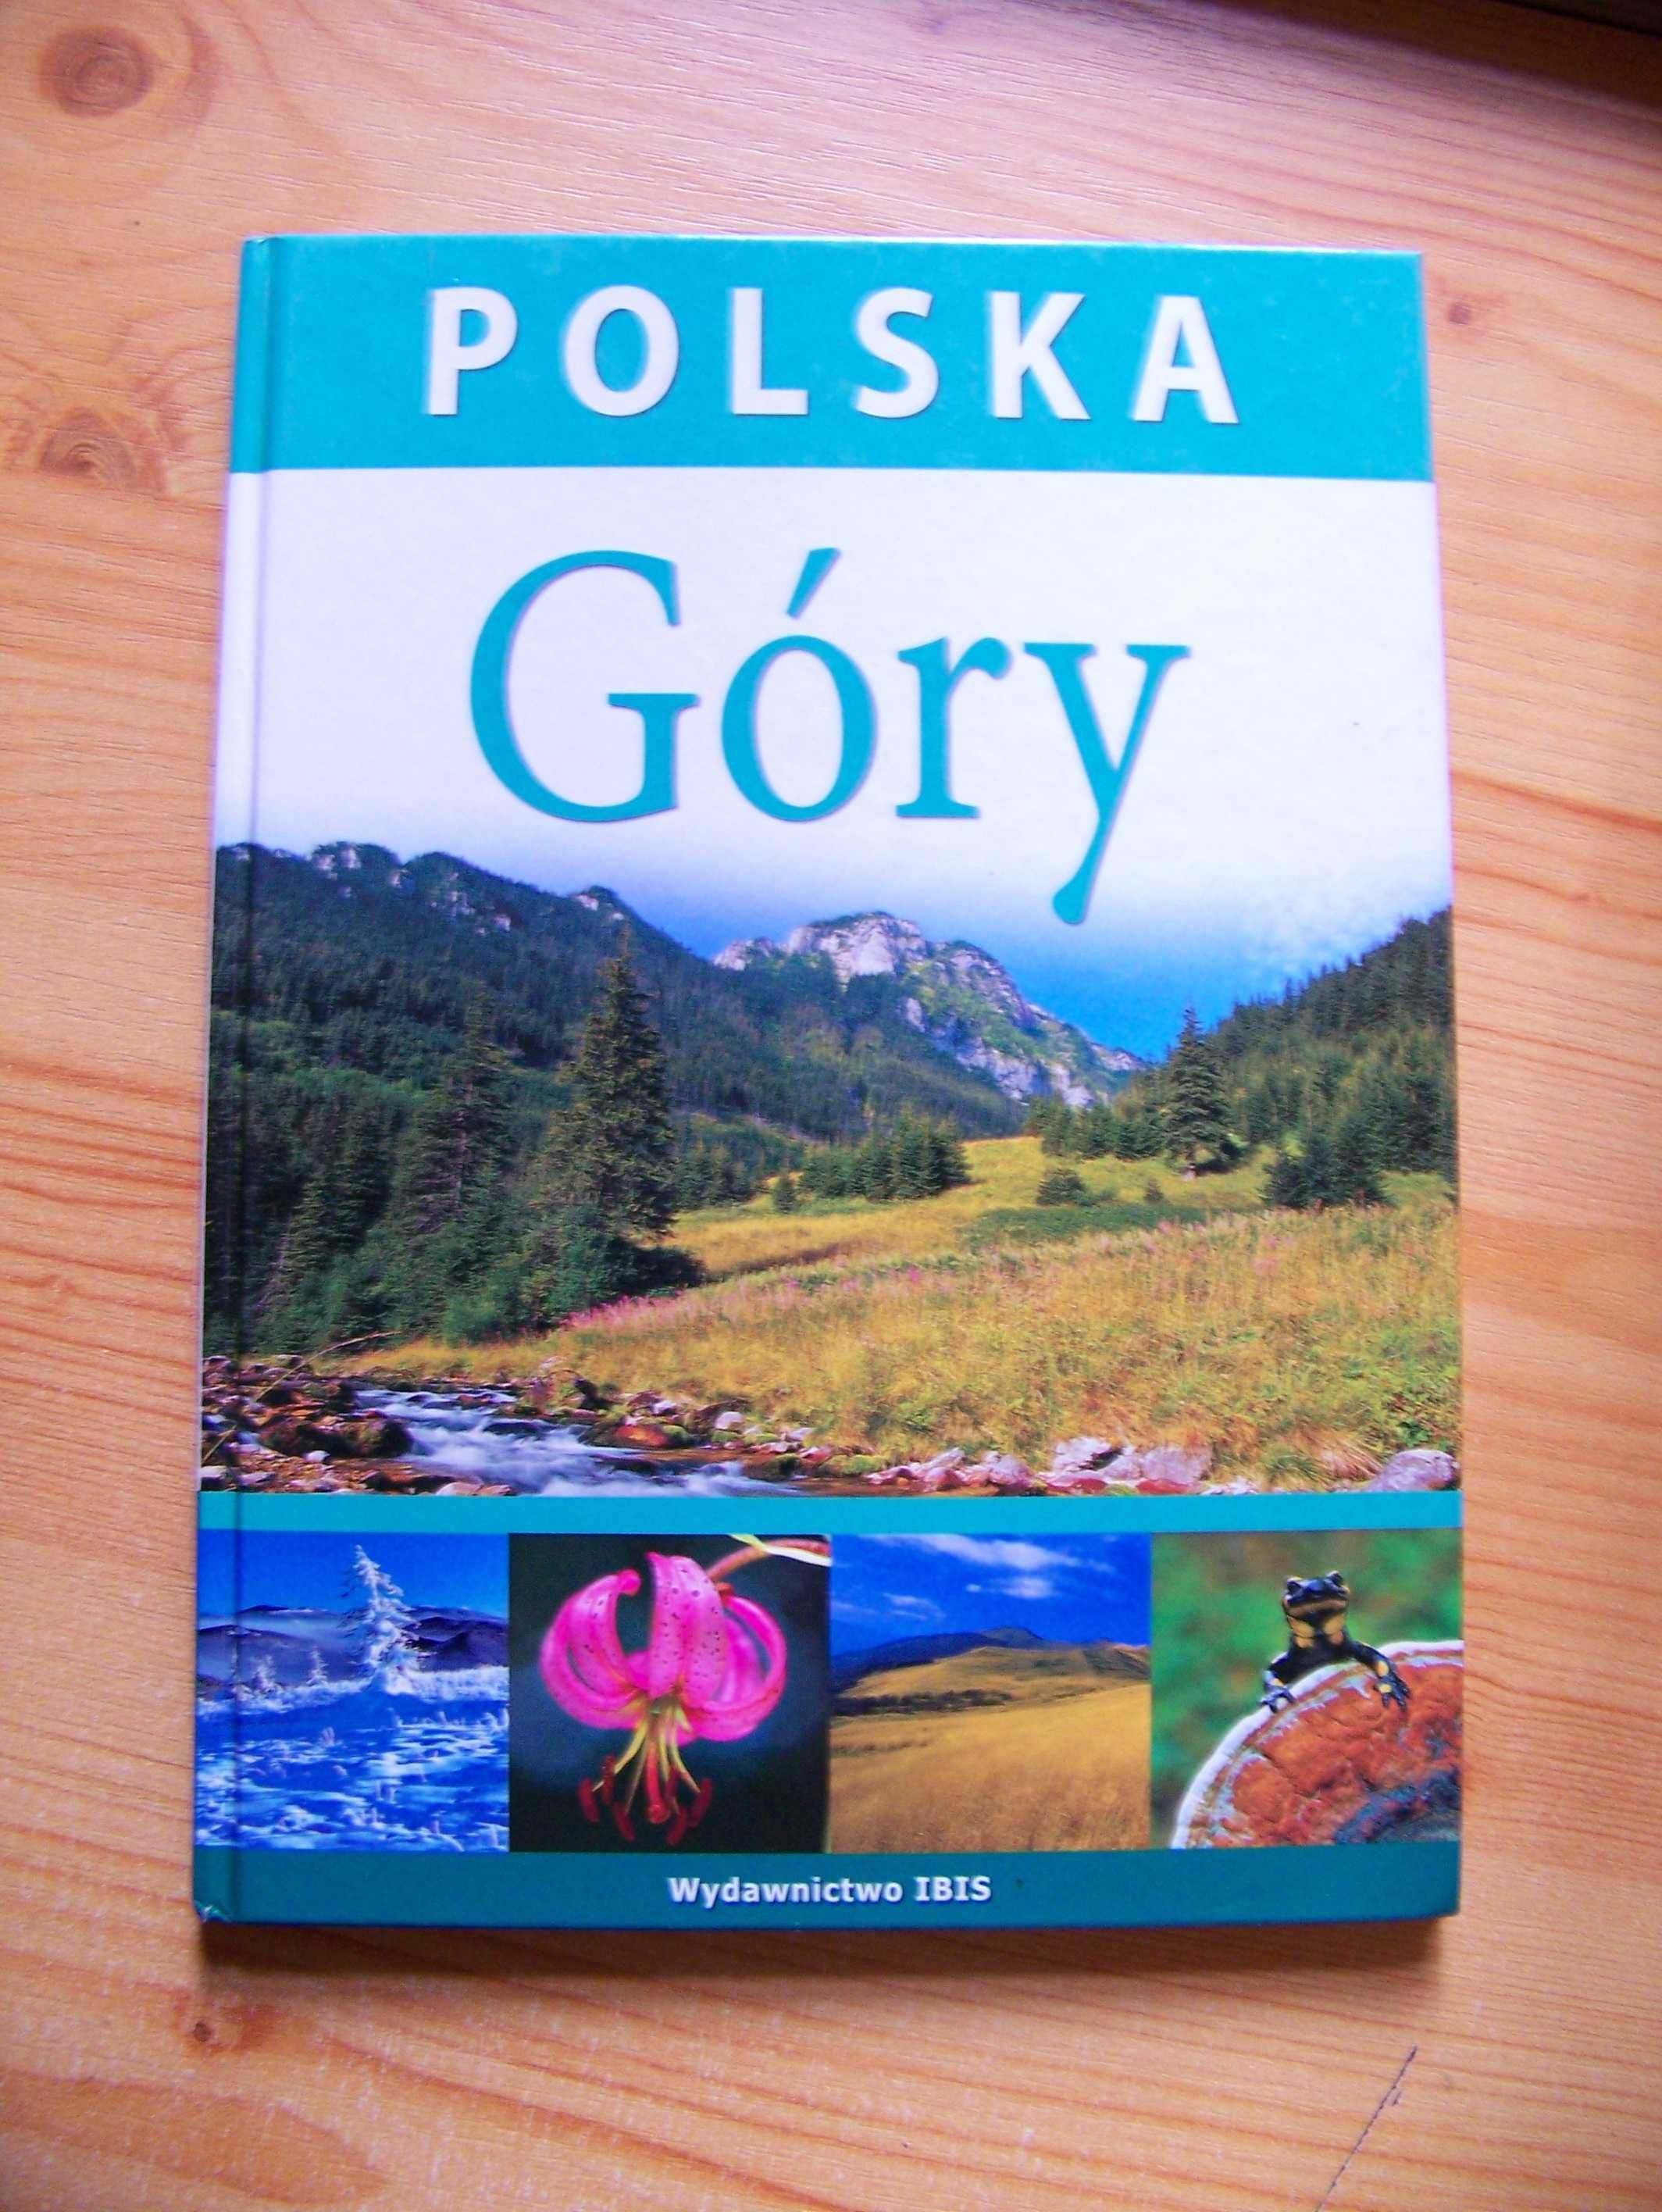 Album "Polska - Góry", wydawnictwo IBIS